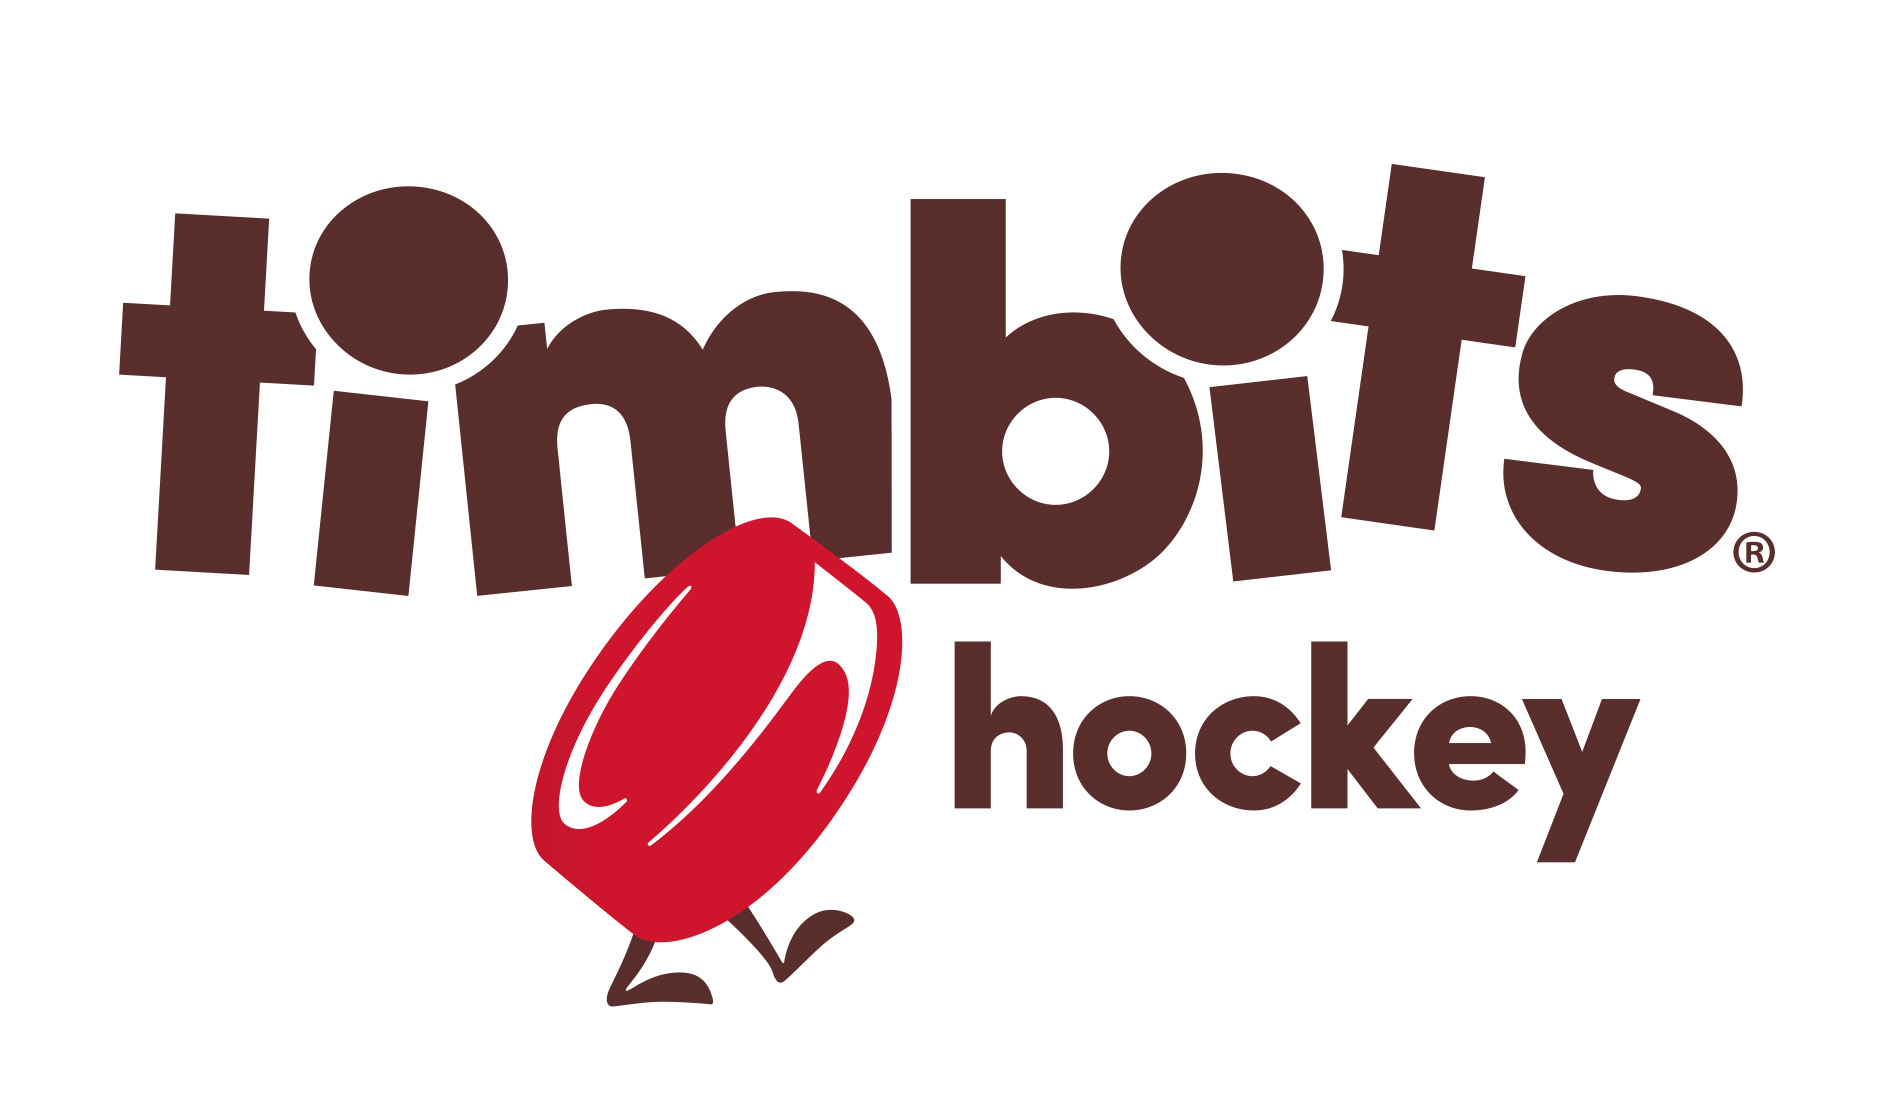 TimBits Hockey_Revised_V2